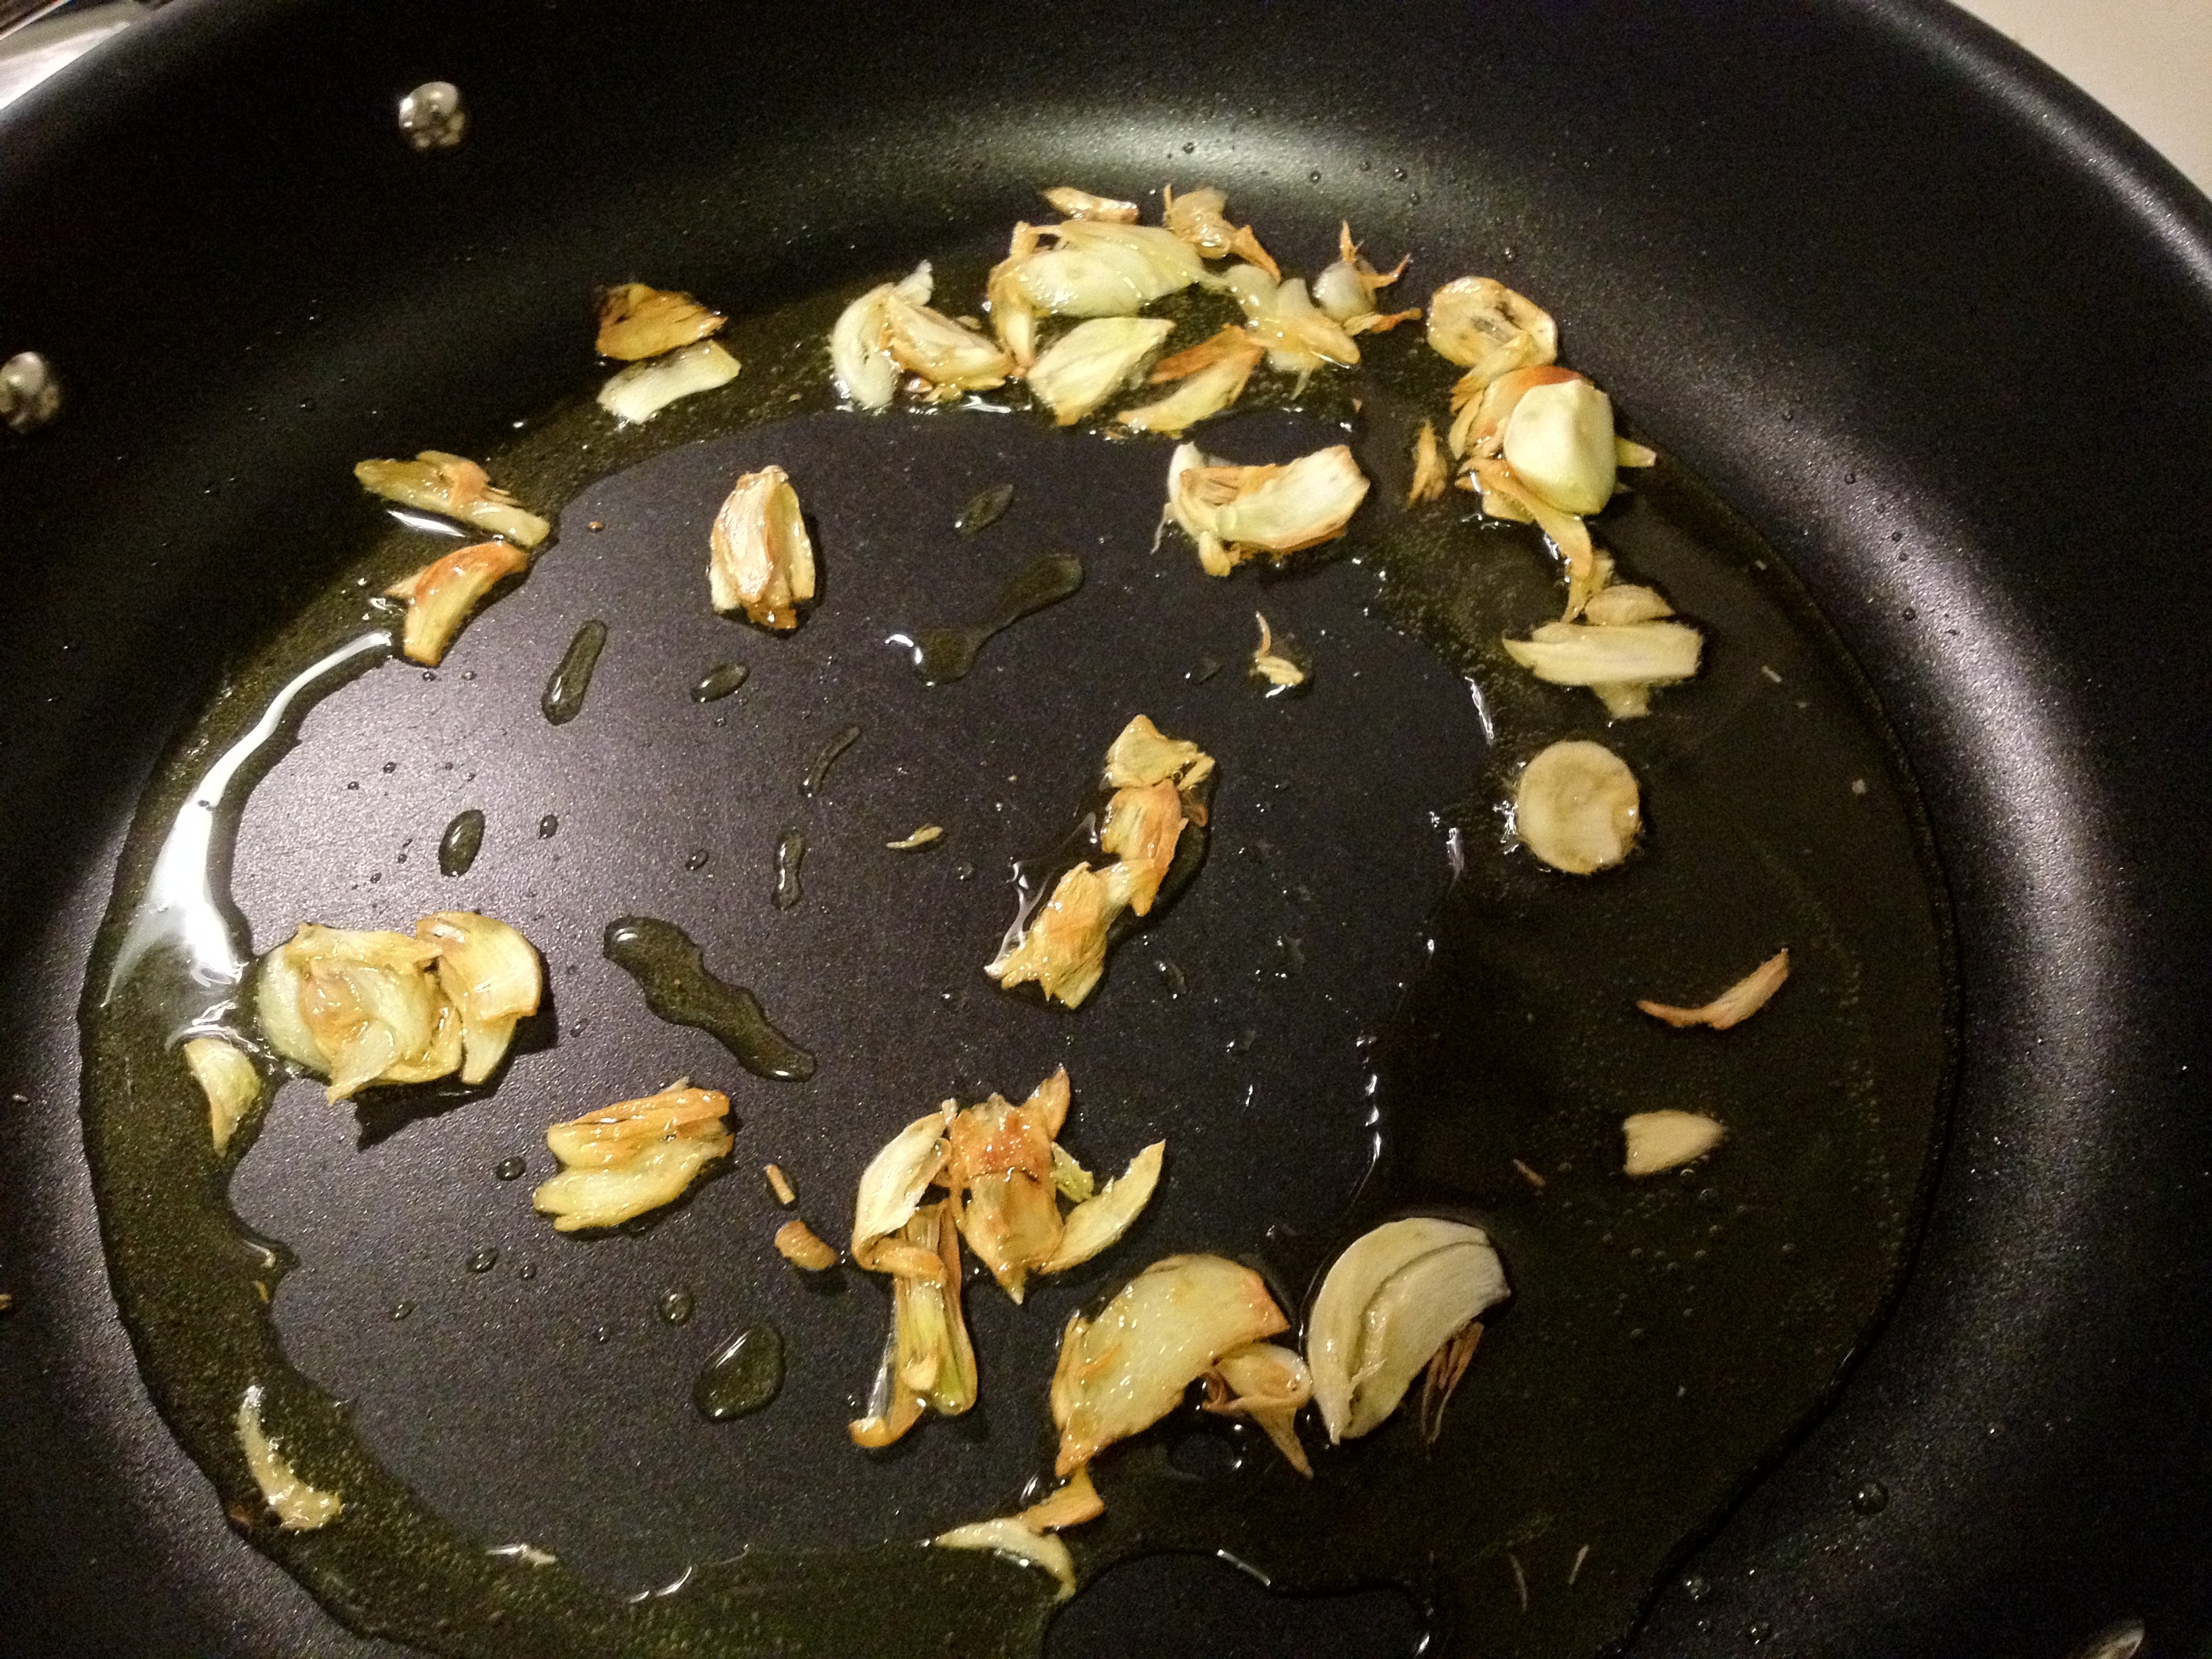 Sauteed garlic in pan.